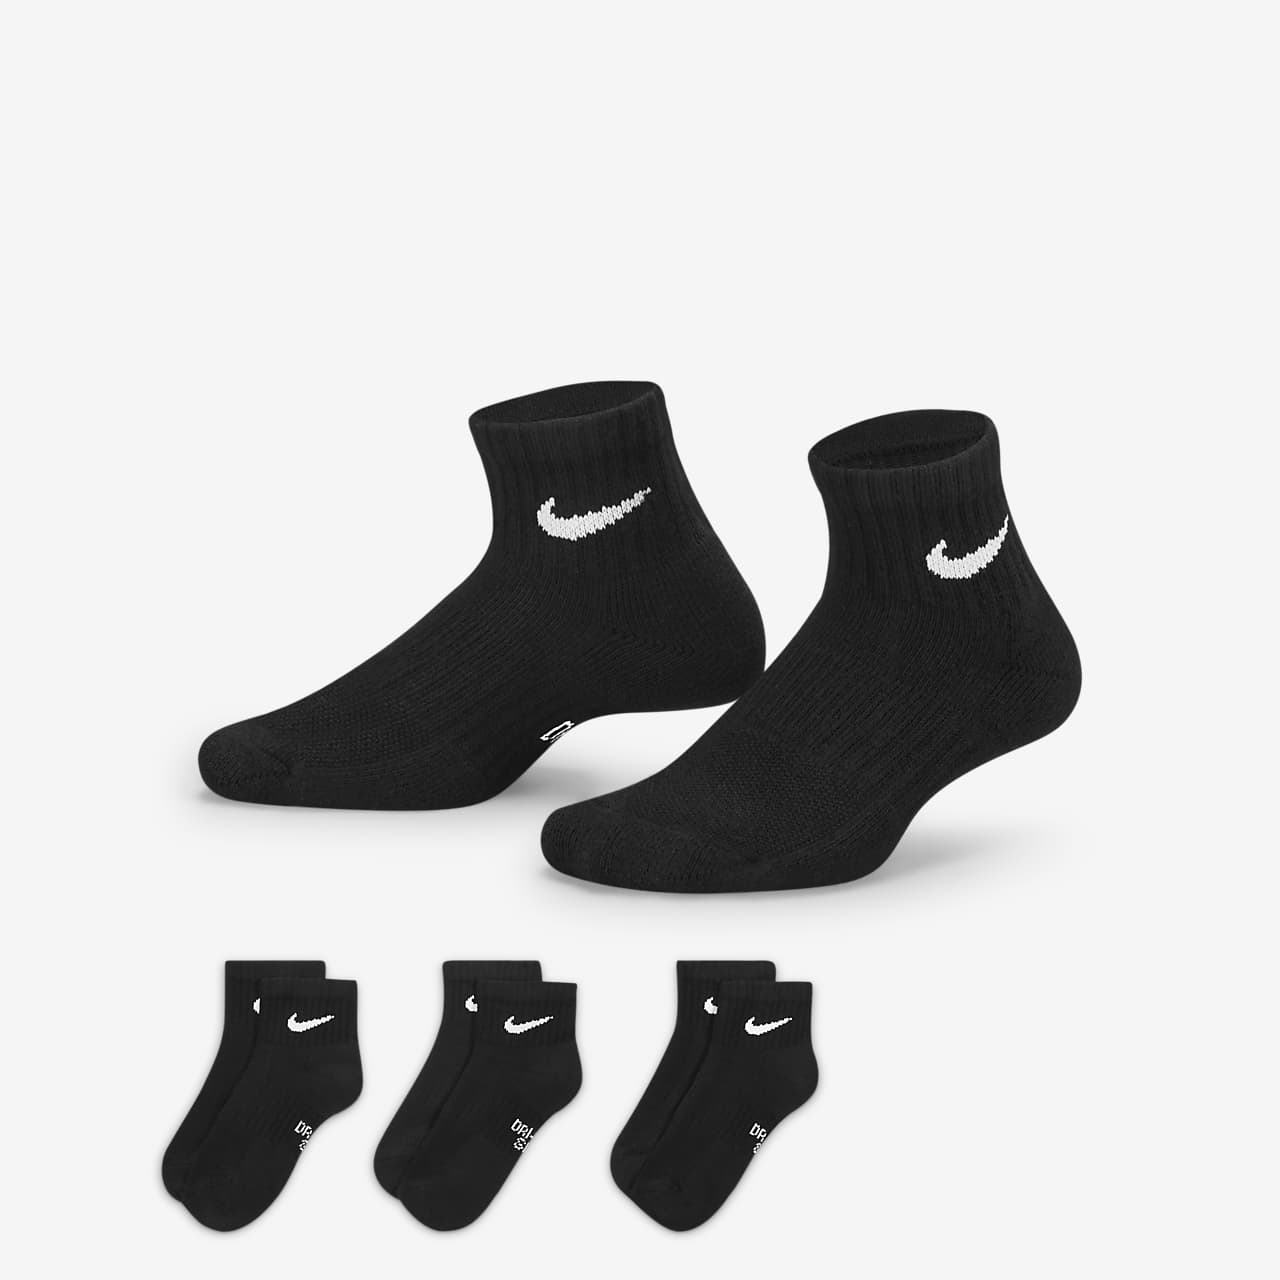 ถุงเท้าหุ้มข้อลดแรงกระแทกเด็กโต Nike Everyday (3 คู่)